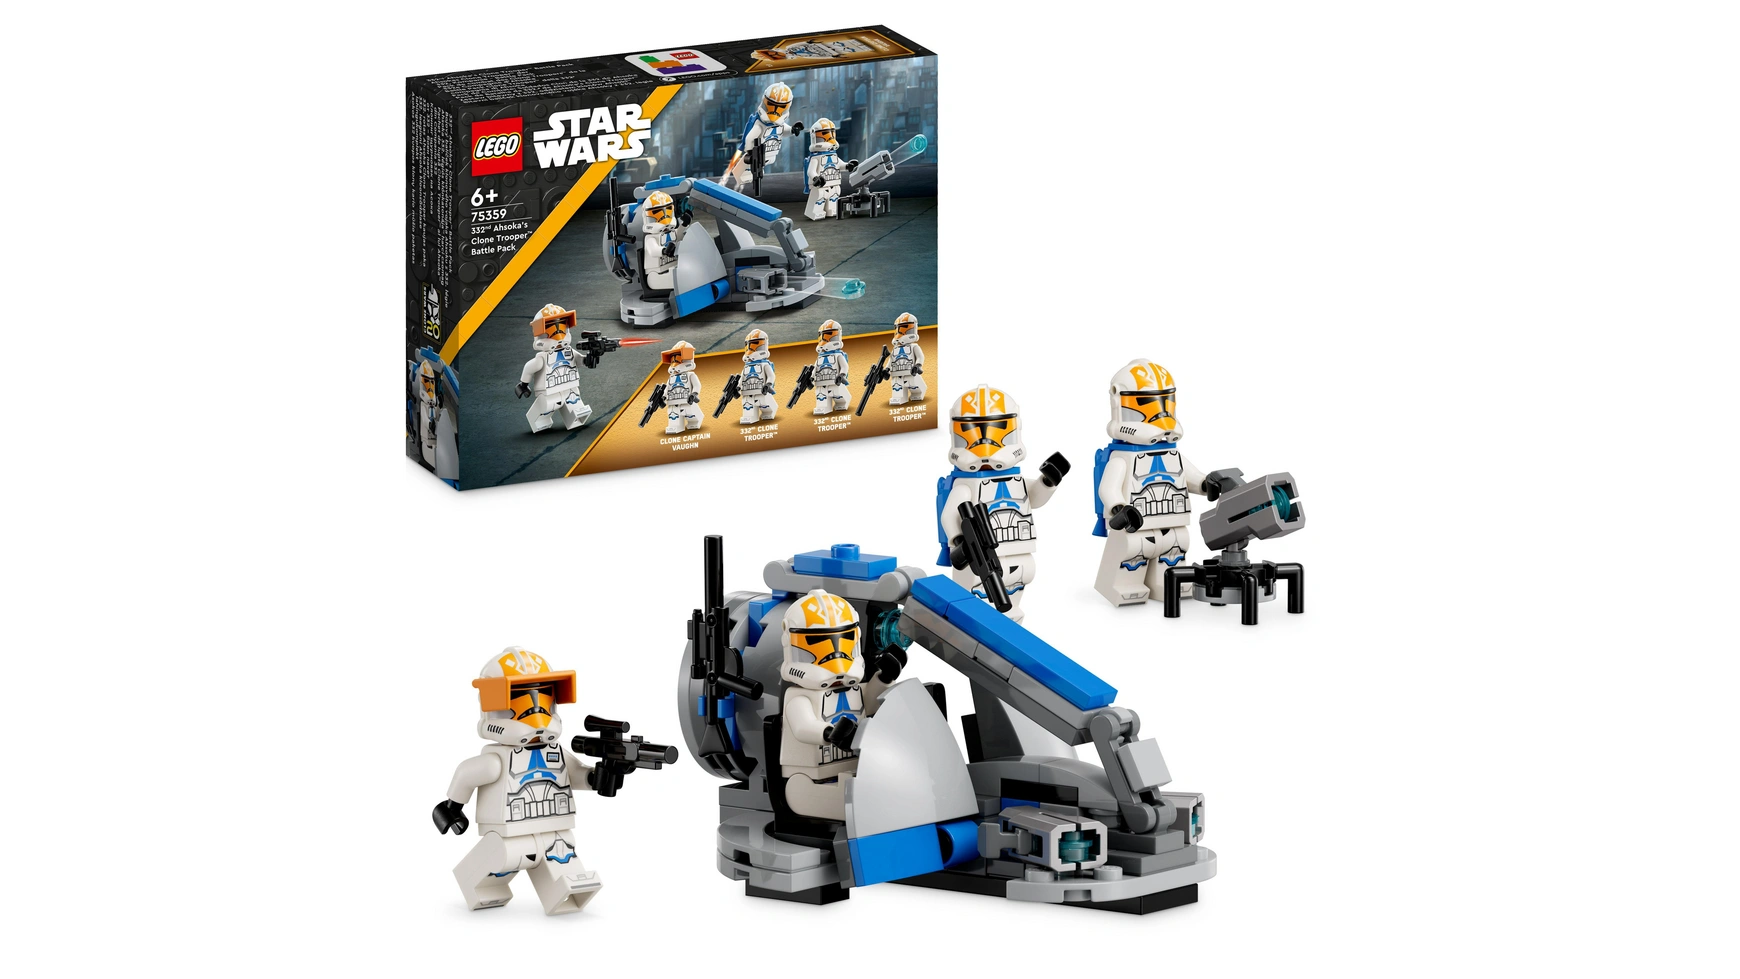 Lego Star Wars Солдат-клон Асоки из 332-й роты Боевой набор хочу лего lego star wars 75359 боевой набор 332 рота солдат клонов асоки